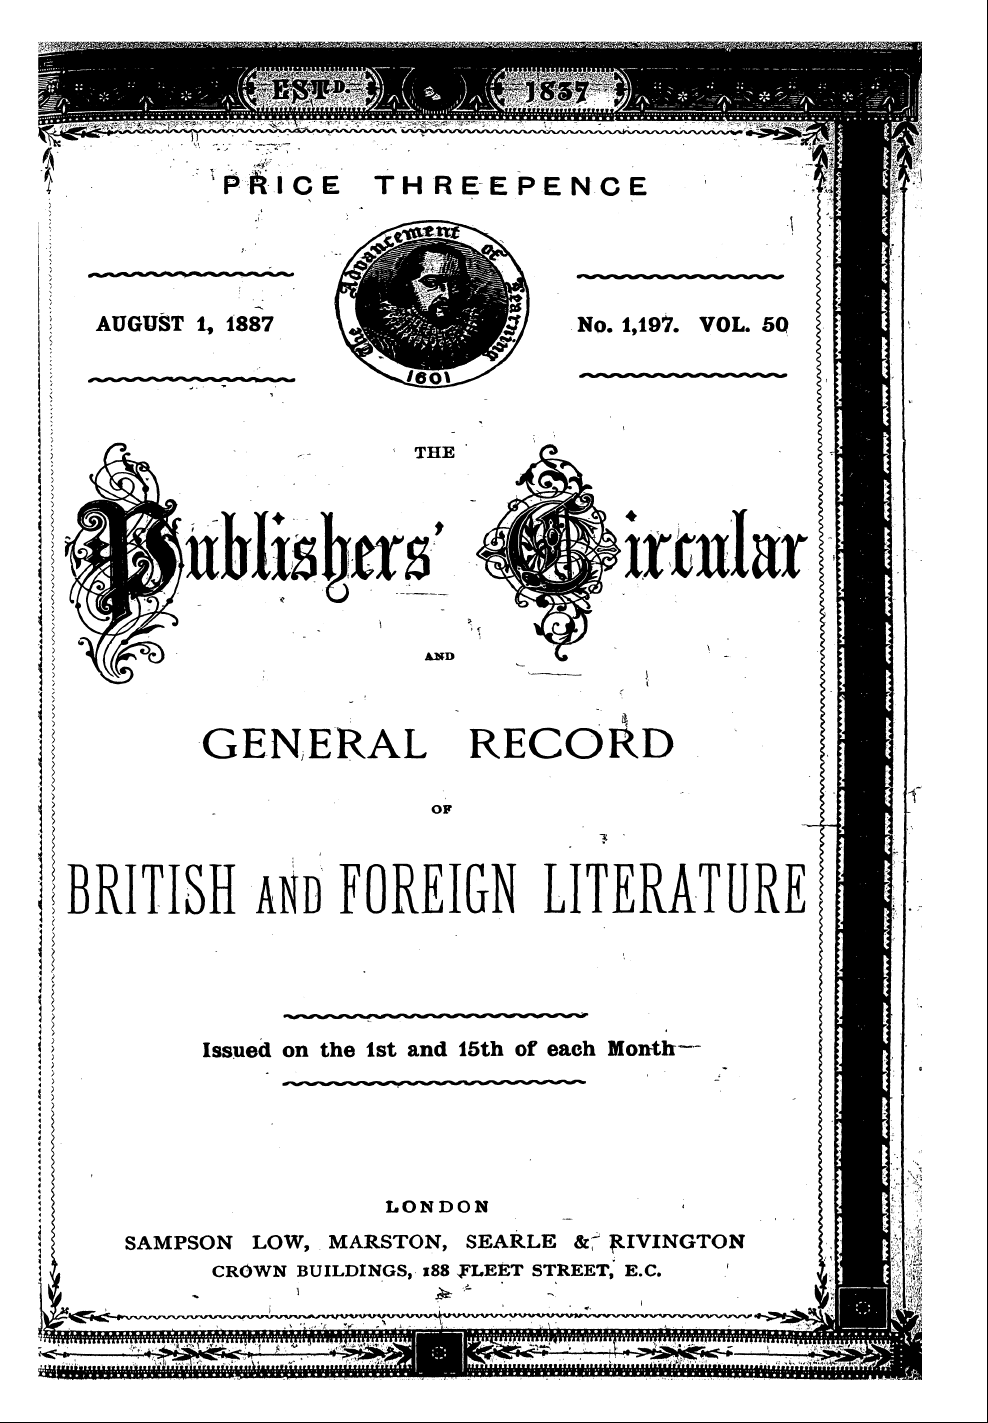 Publishers’ Circular (1880-1890): jS F Y, 1st edition - ^S^^^^^^^F^^^^^^ ^^ K B^ ^ ^Bi ^^ ^^ ^ B...